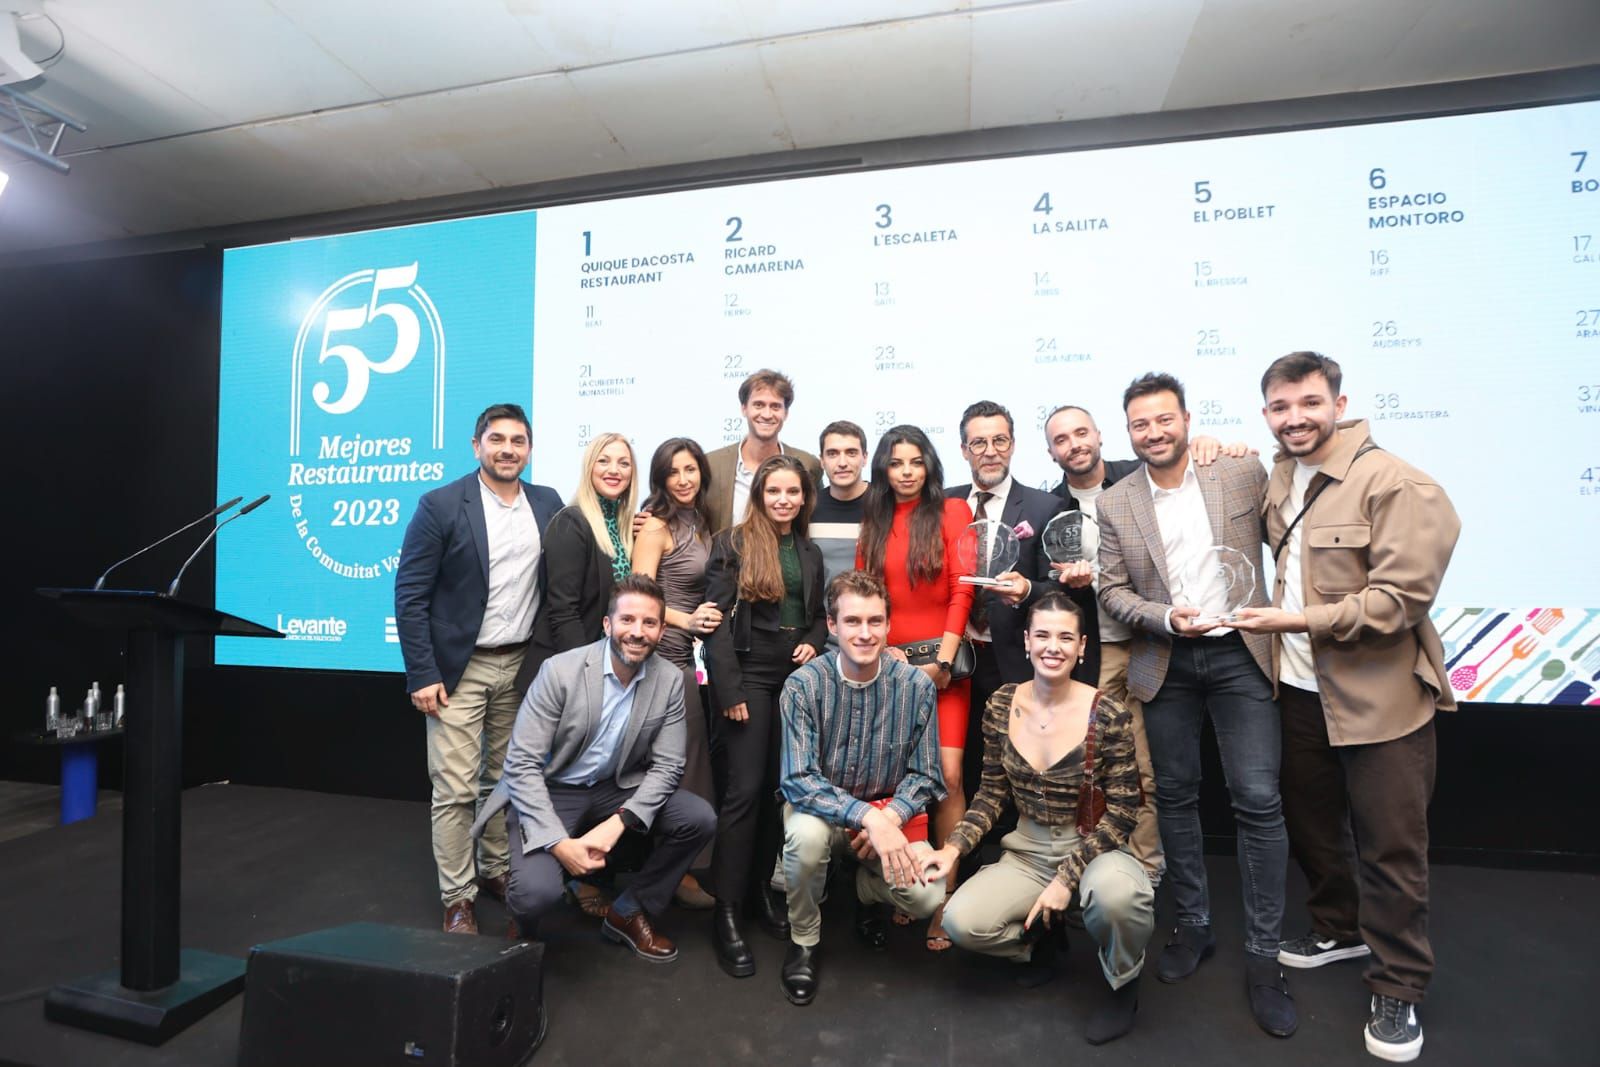 Todas las fotos de la presentación de los ‘55 mejores restaurantes de la Comunitat Valenciana’